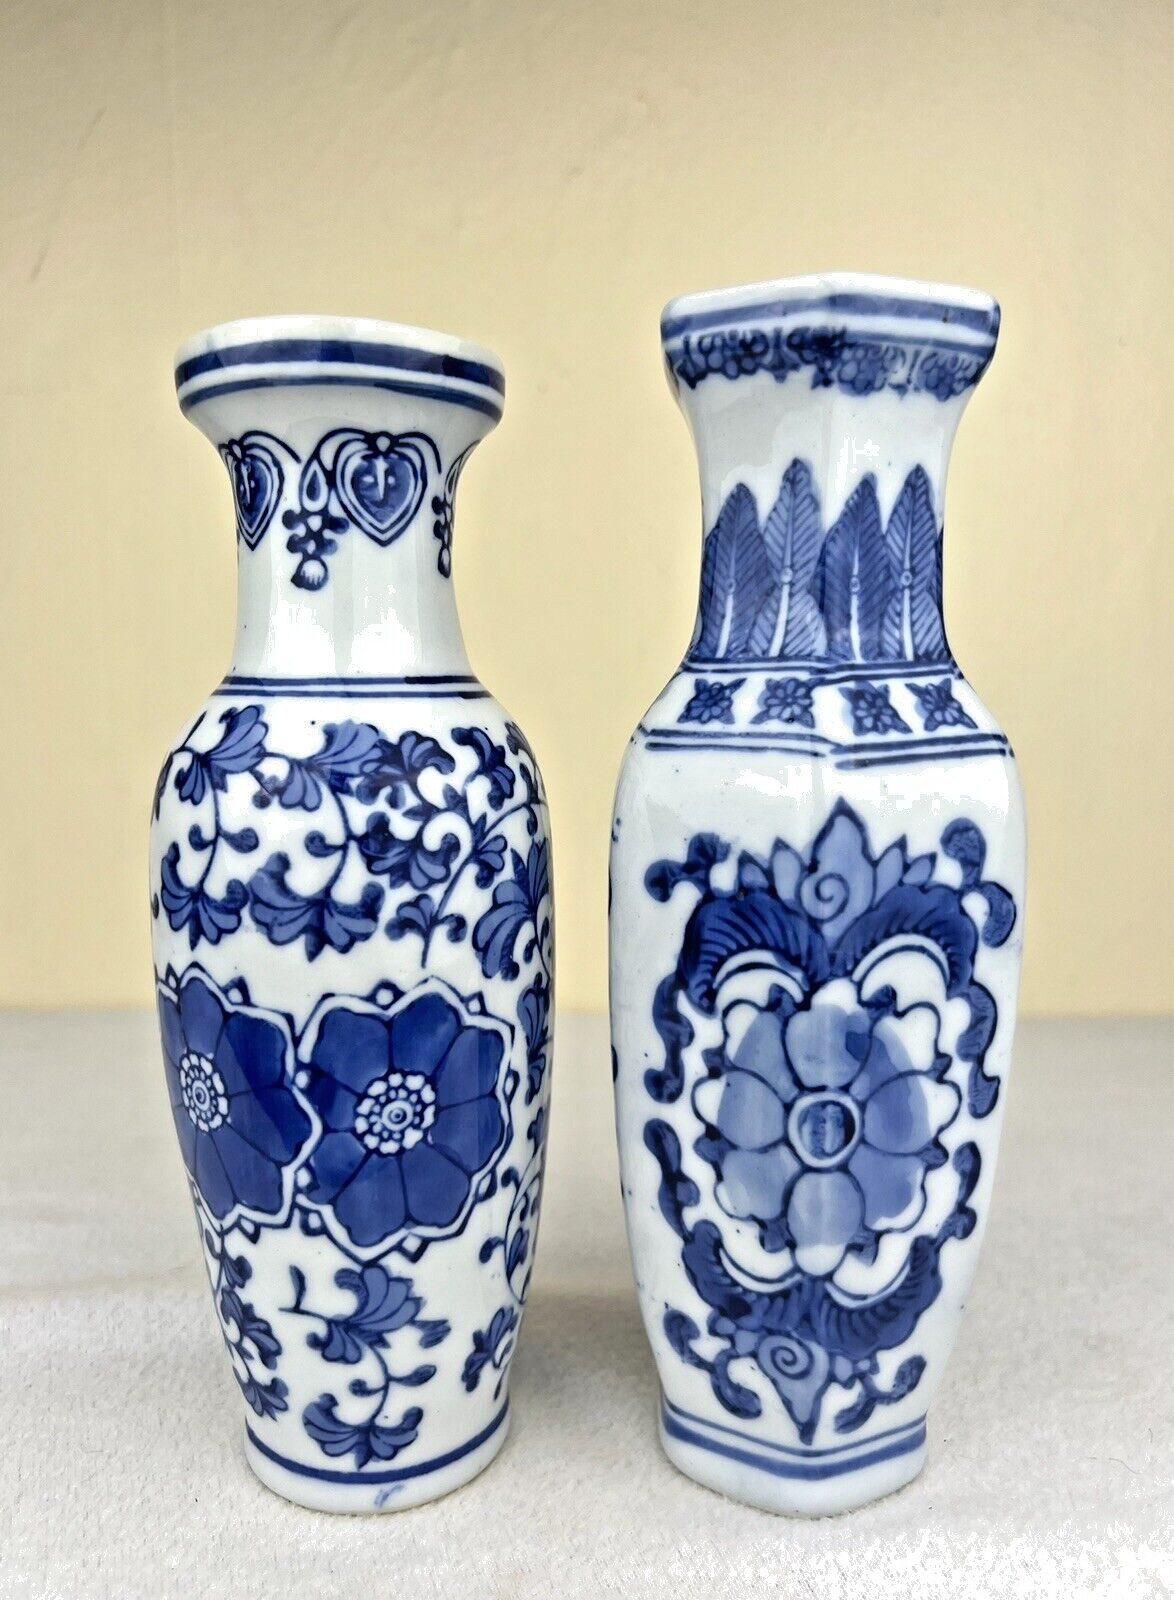 2 Vintage Asian Chinese Vases Signed Blue & White Floral Design Porcelain 8 1/8